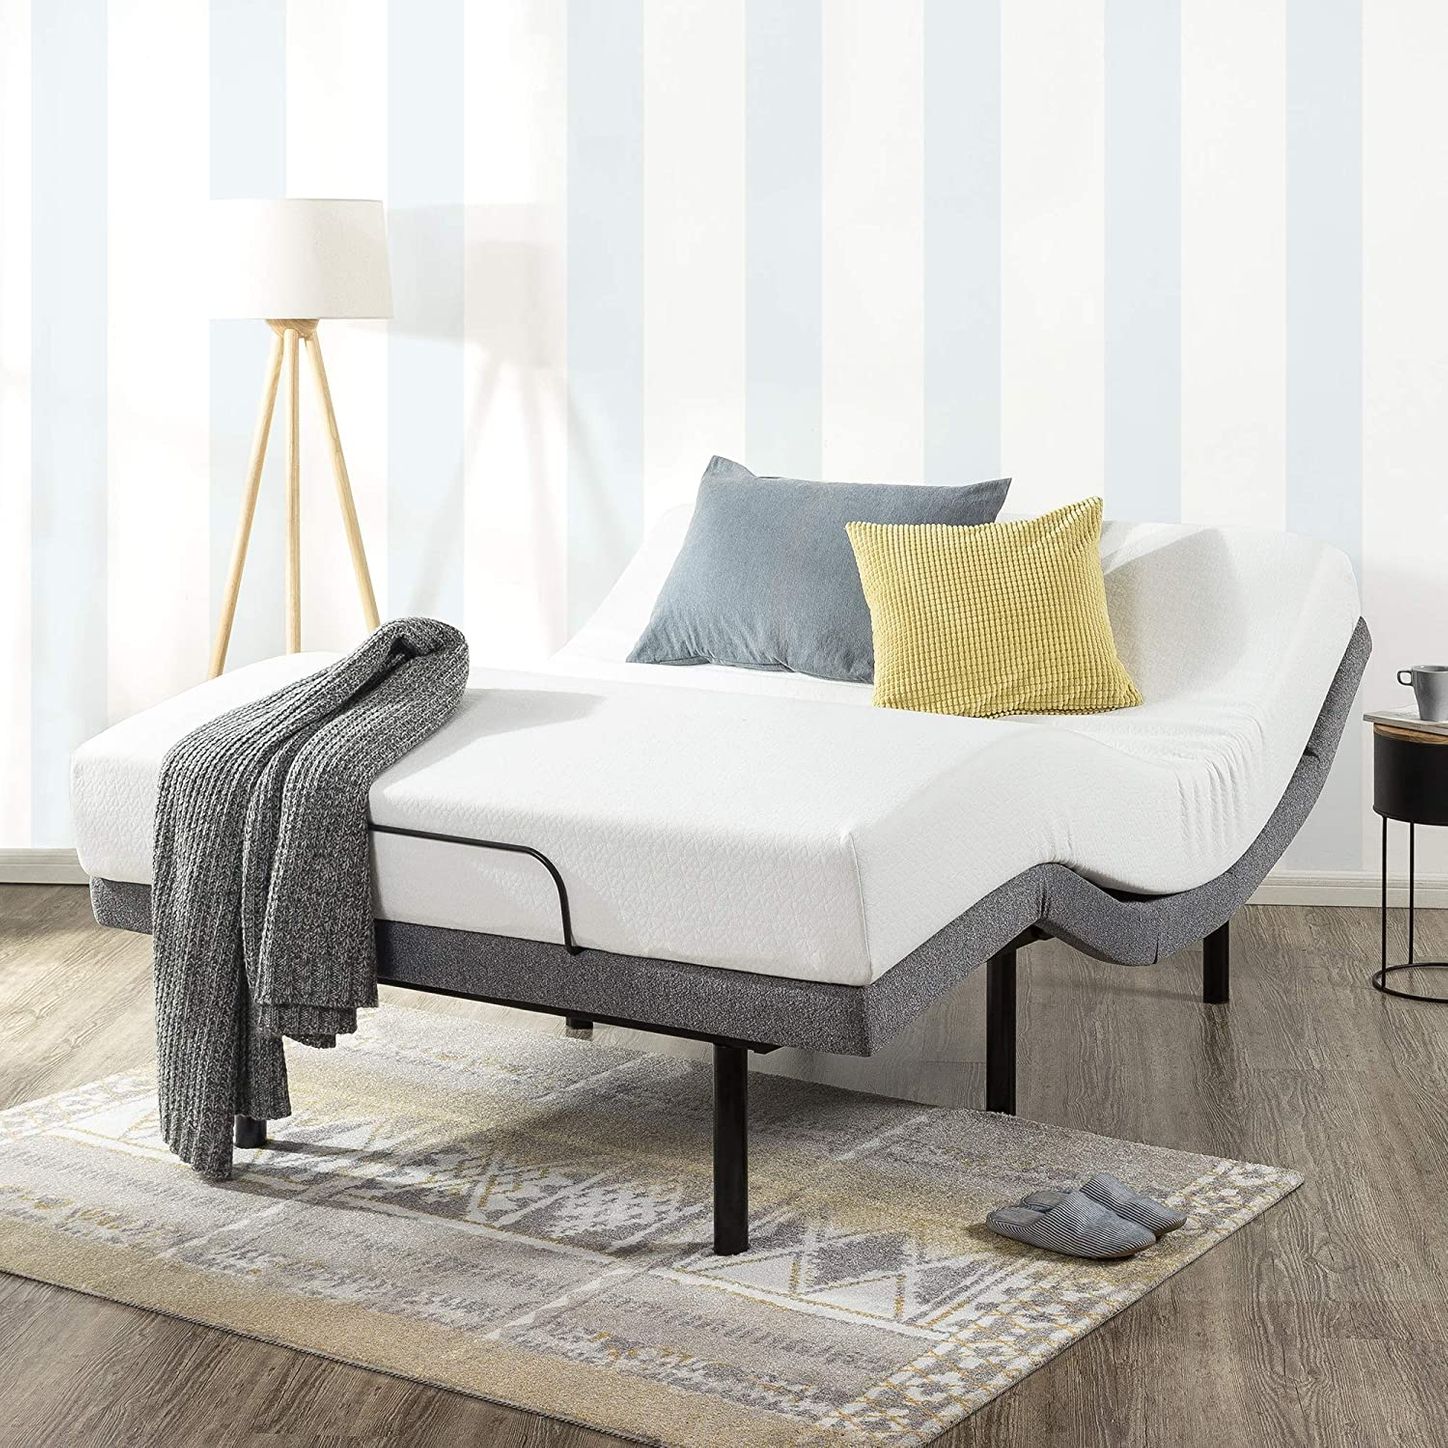 10 Best Adjustable Bed Bases 2022 The, Best Adjustable Bed Frame For Tempurpedic Mattress